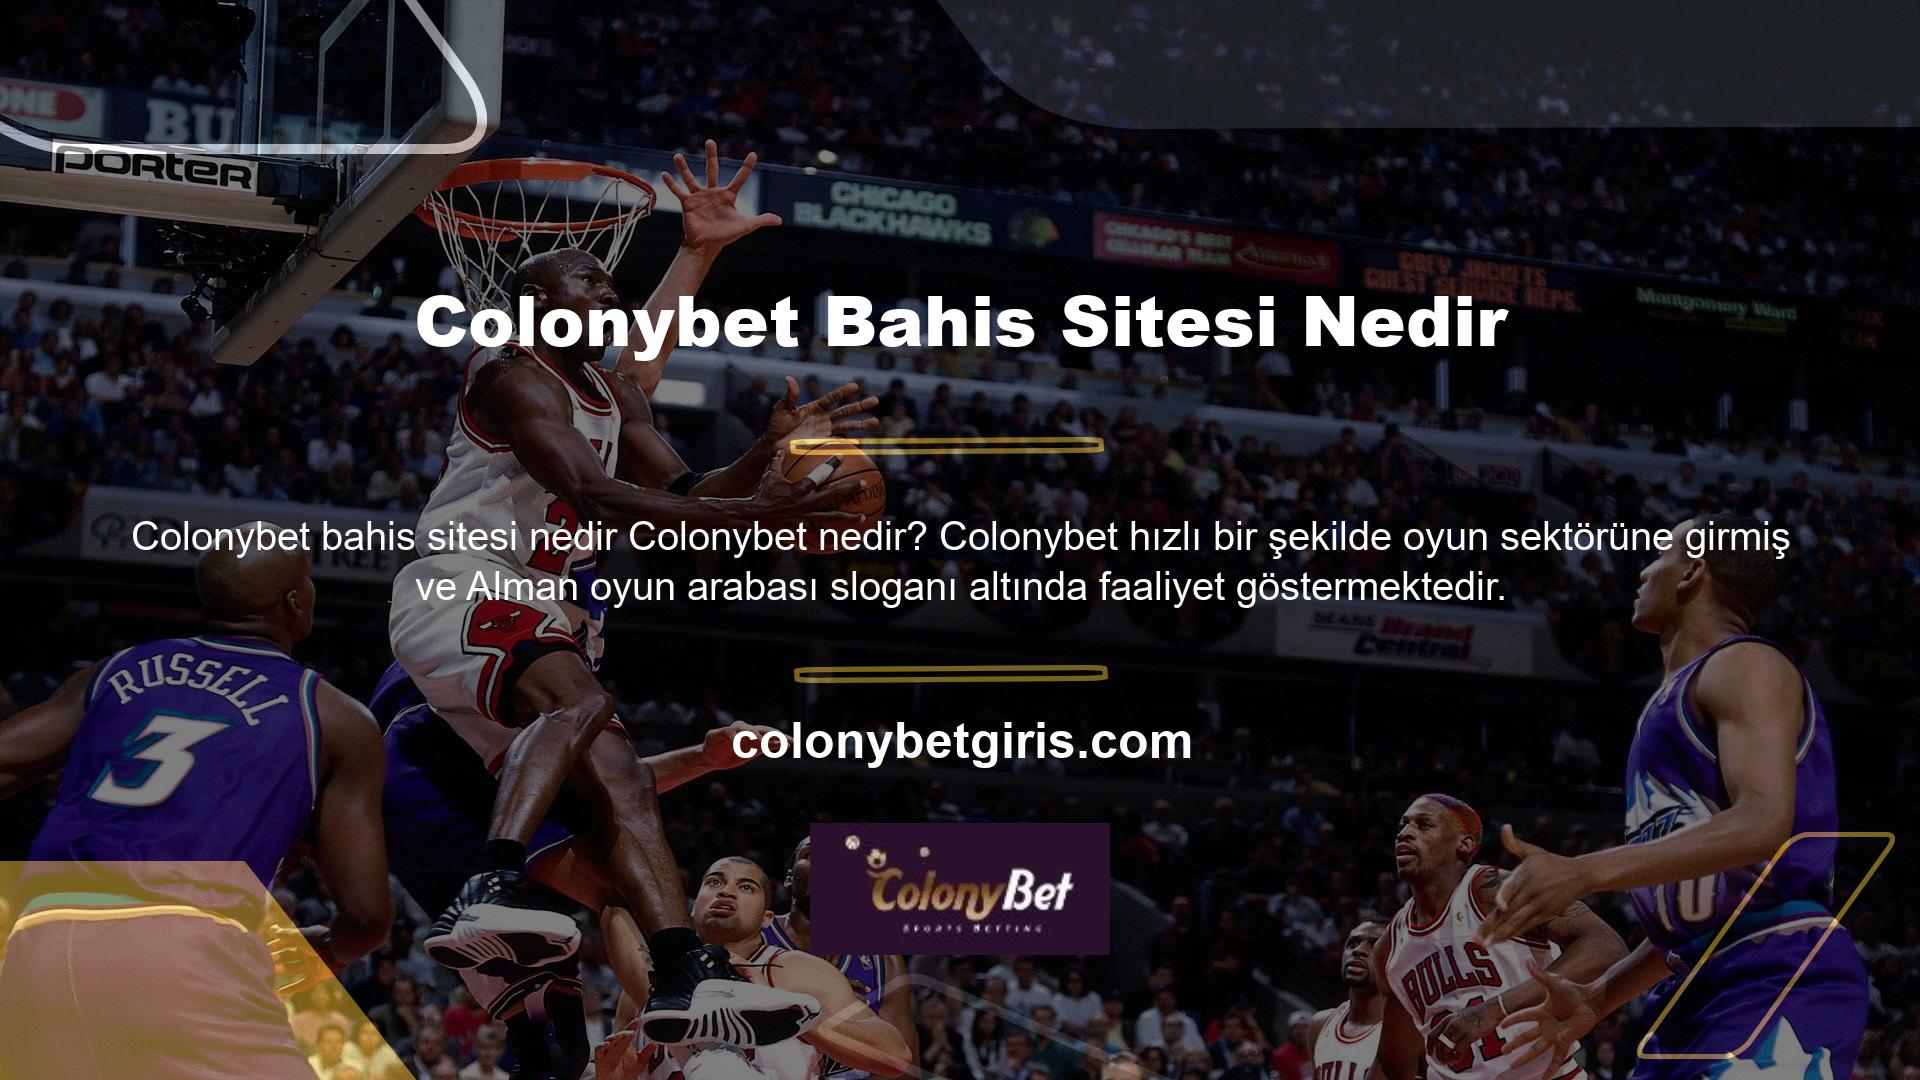 Colonybet, sektördeki lider web sitelerinden biridir ve kısa sürede mükemmel bir itibar kazanmıştır